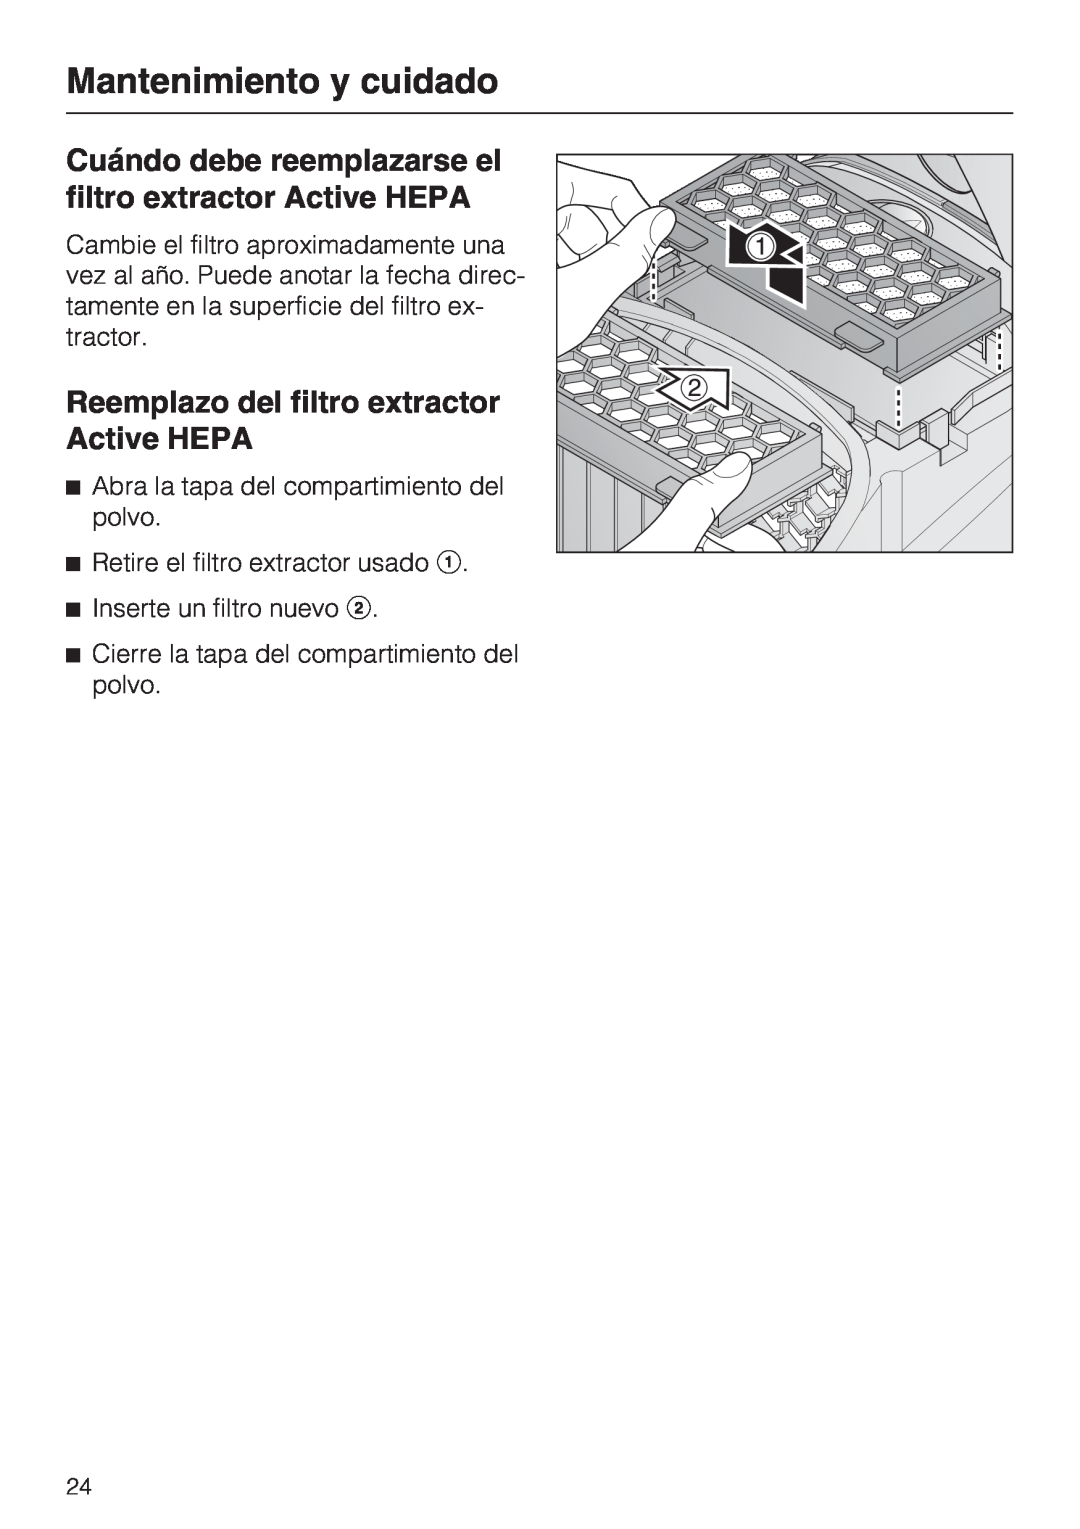 Miele S 2001 manual Reemplazo del filtro extractor Active HEPA, Mantenimiento y cuidado, Retire el filtro extractor usado 